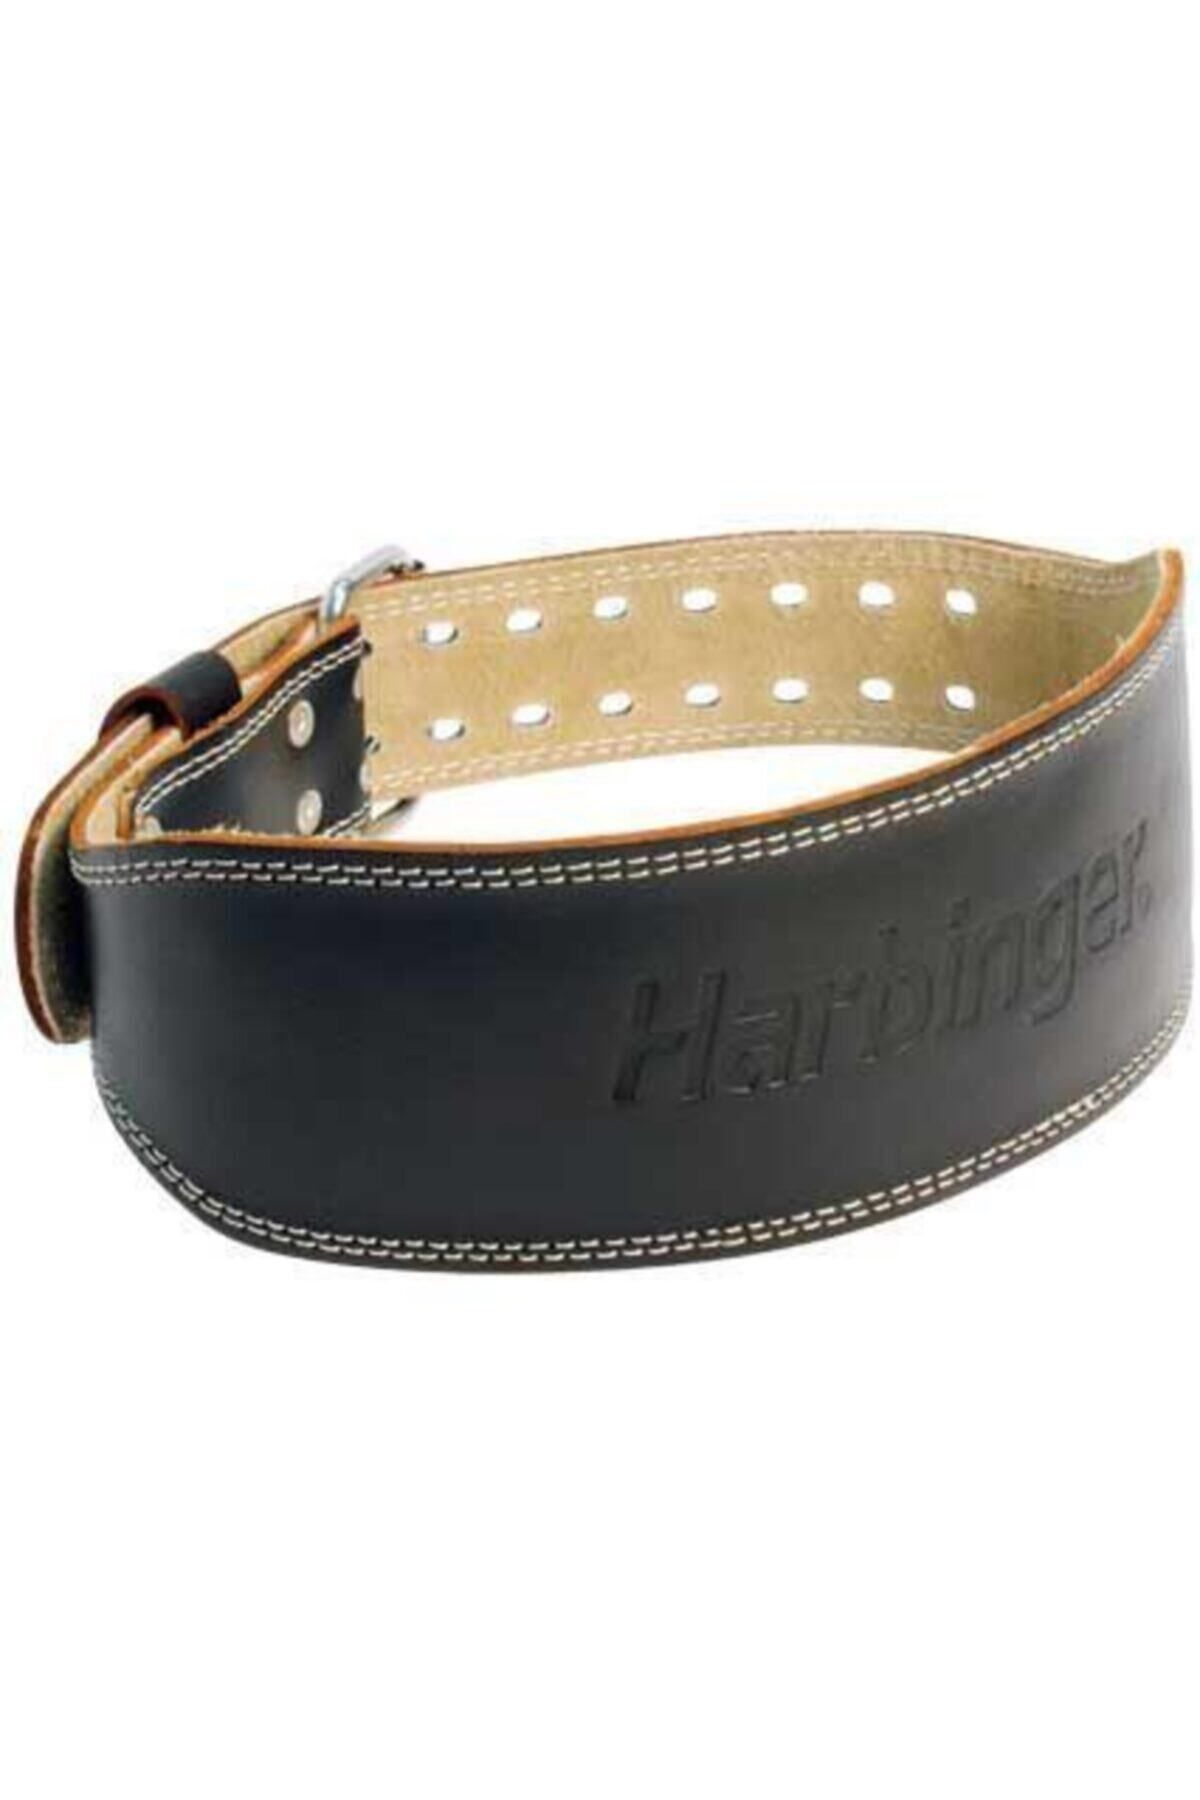 Harbinger 4 Padded Leather Belt Kemer-l